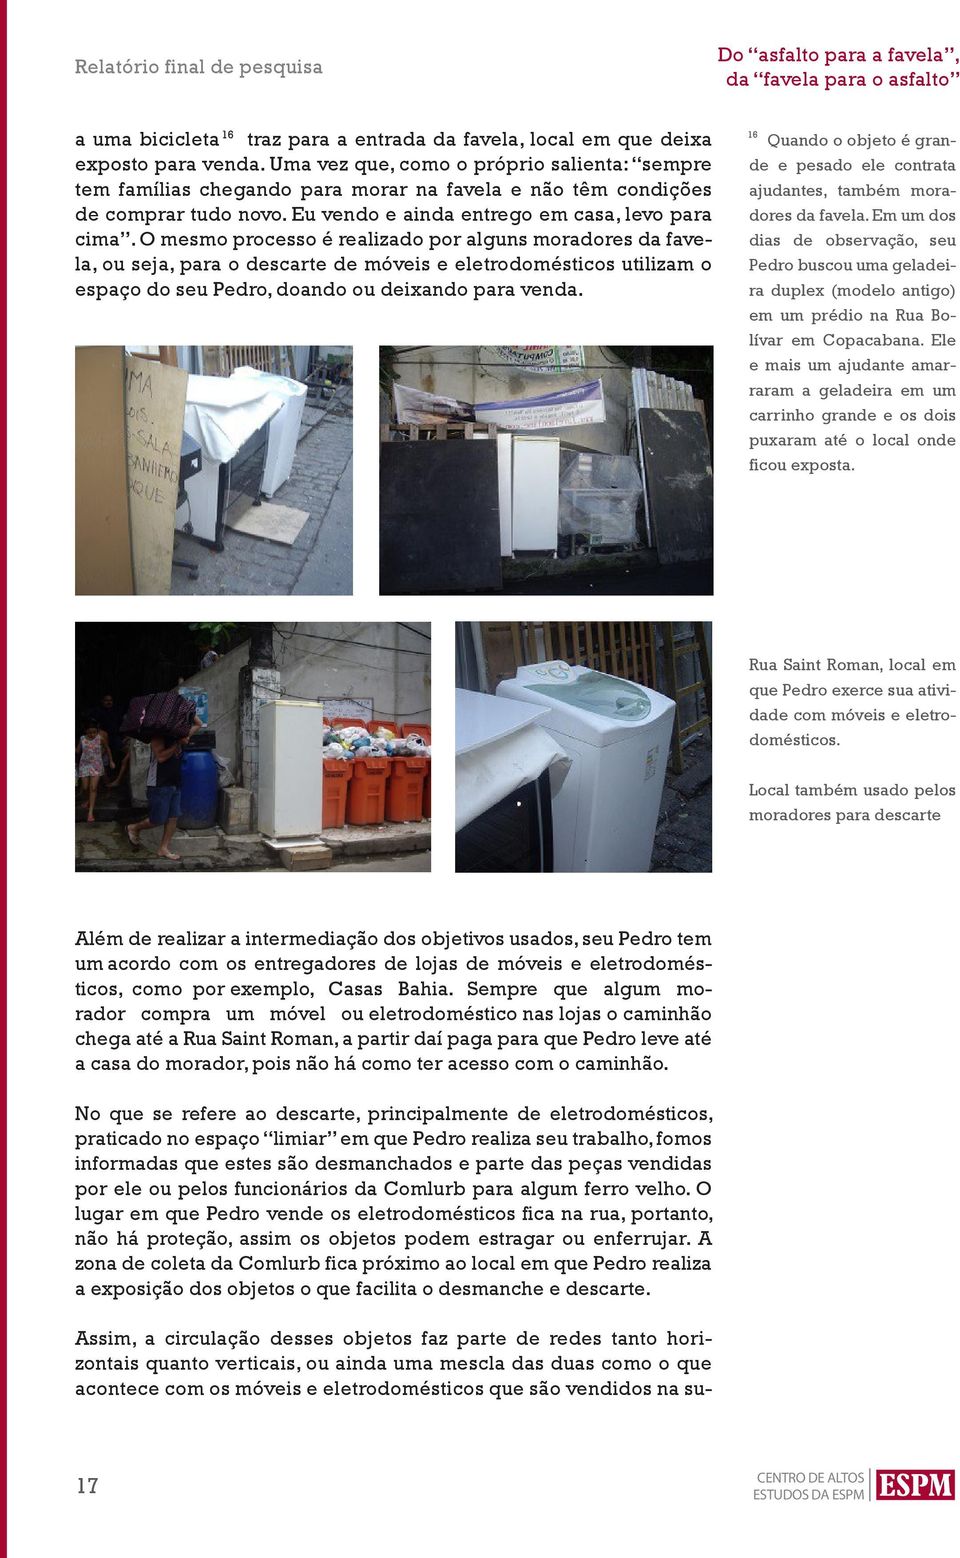 O mesmo processo é realizado por alguns moradores da favela, ou seja, para o descarte de móveis e eletrodomésticos utilizam o espaço do seu Pedro, doando ou deixando para venda.